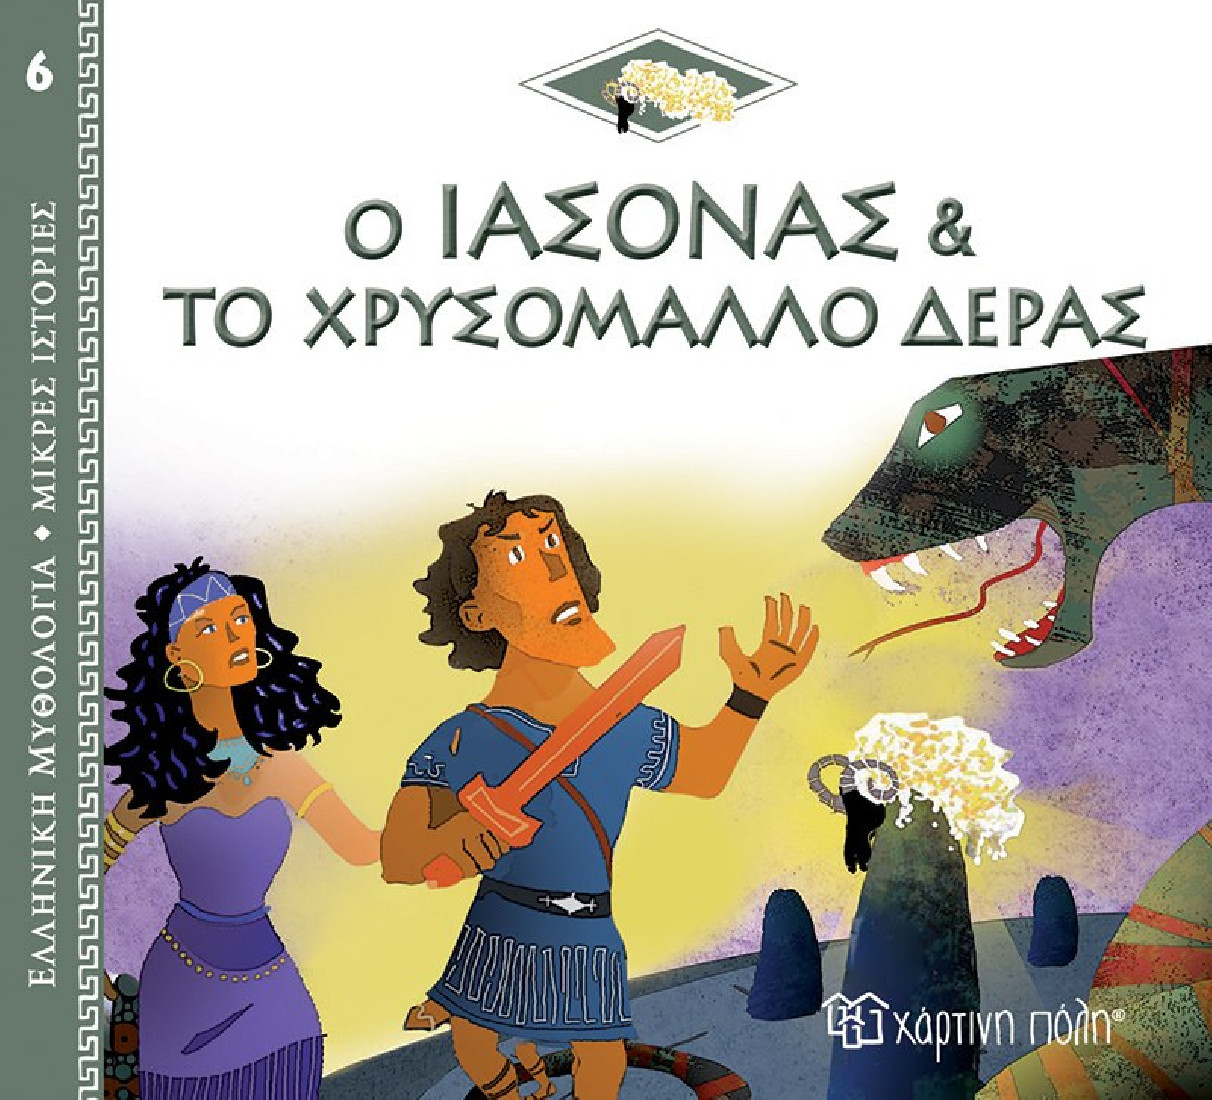 Ελληνική Μυθολογία- Μικρές ιστορίες: Ο Ιάσωνας και το χρυσόμαλλο δέρας